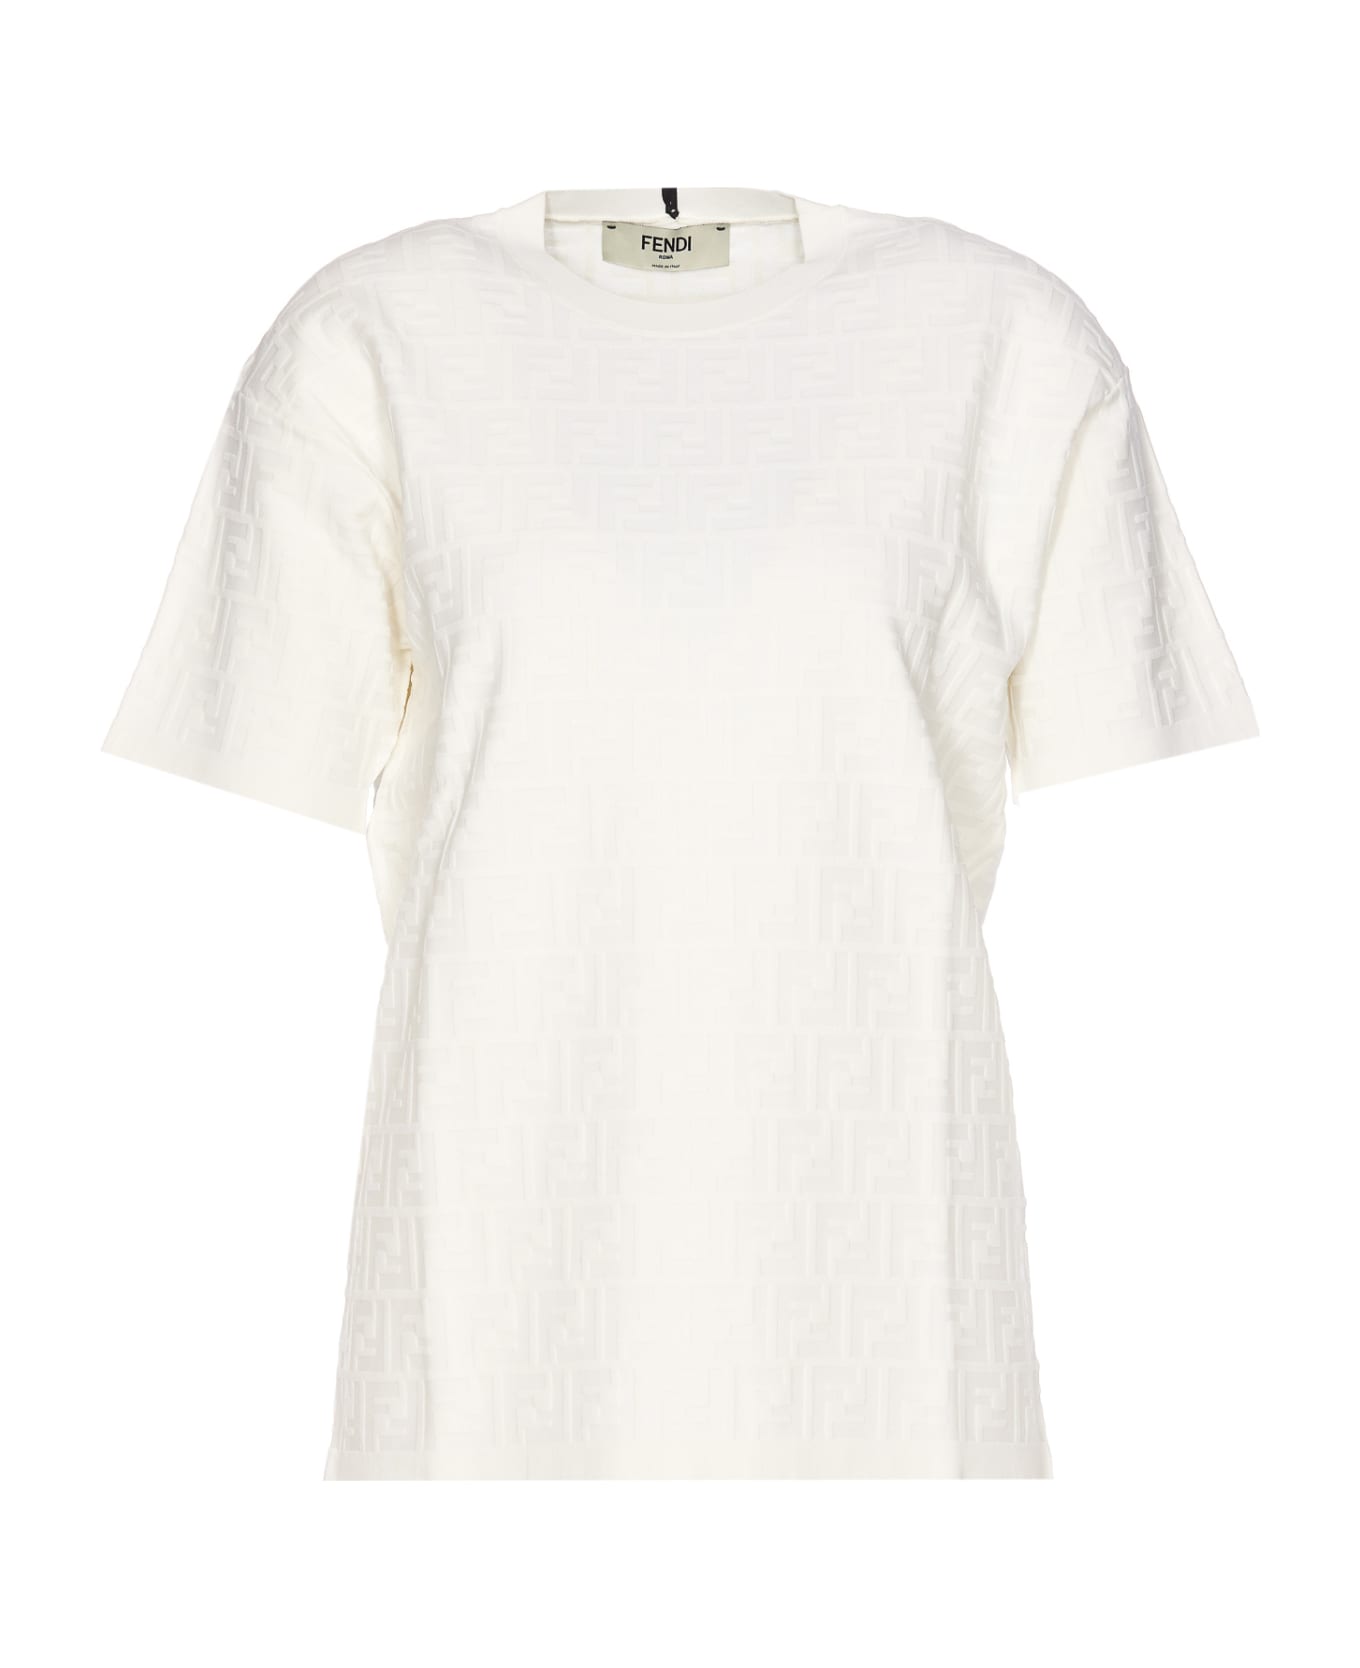 Fendi T-shirt - WHITE Tシャツ